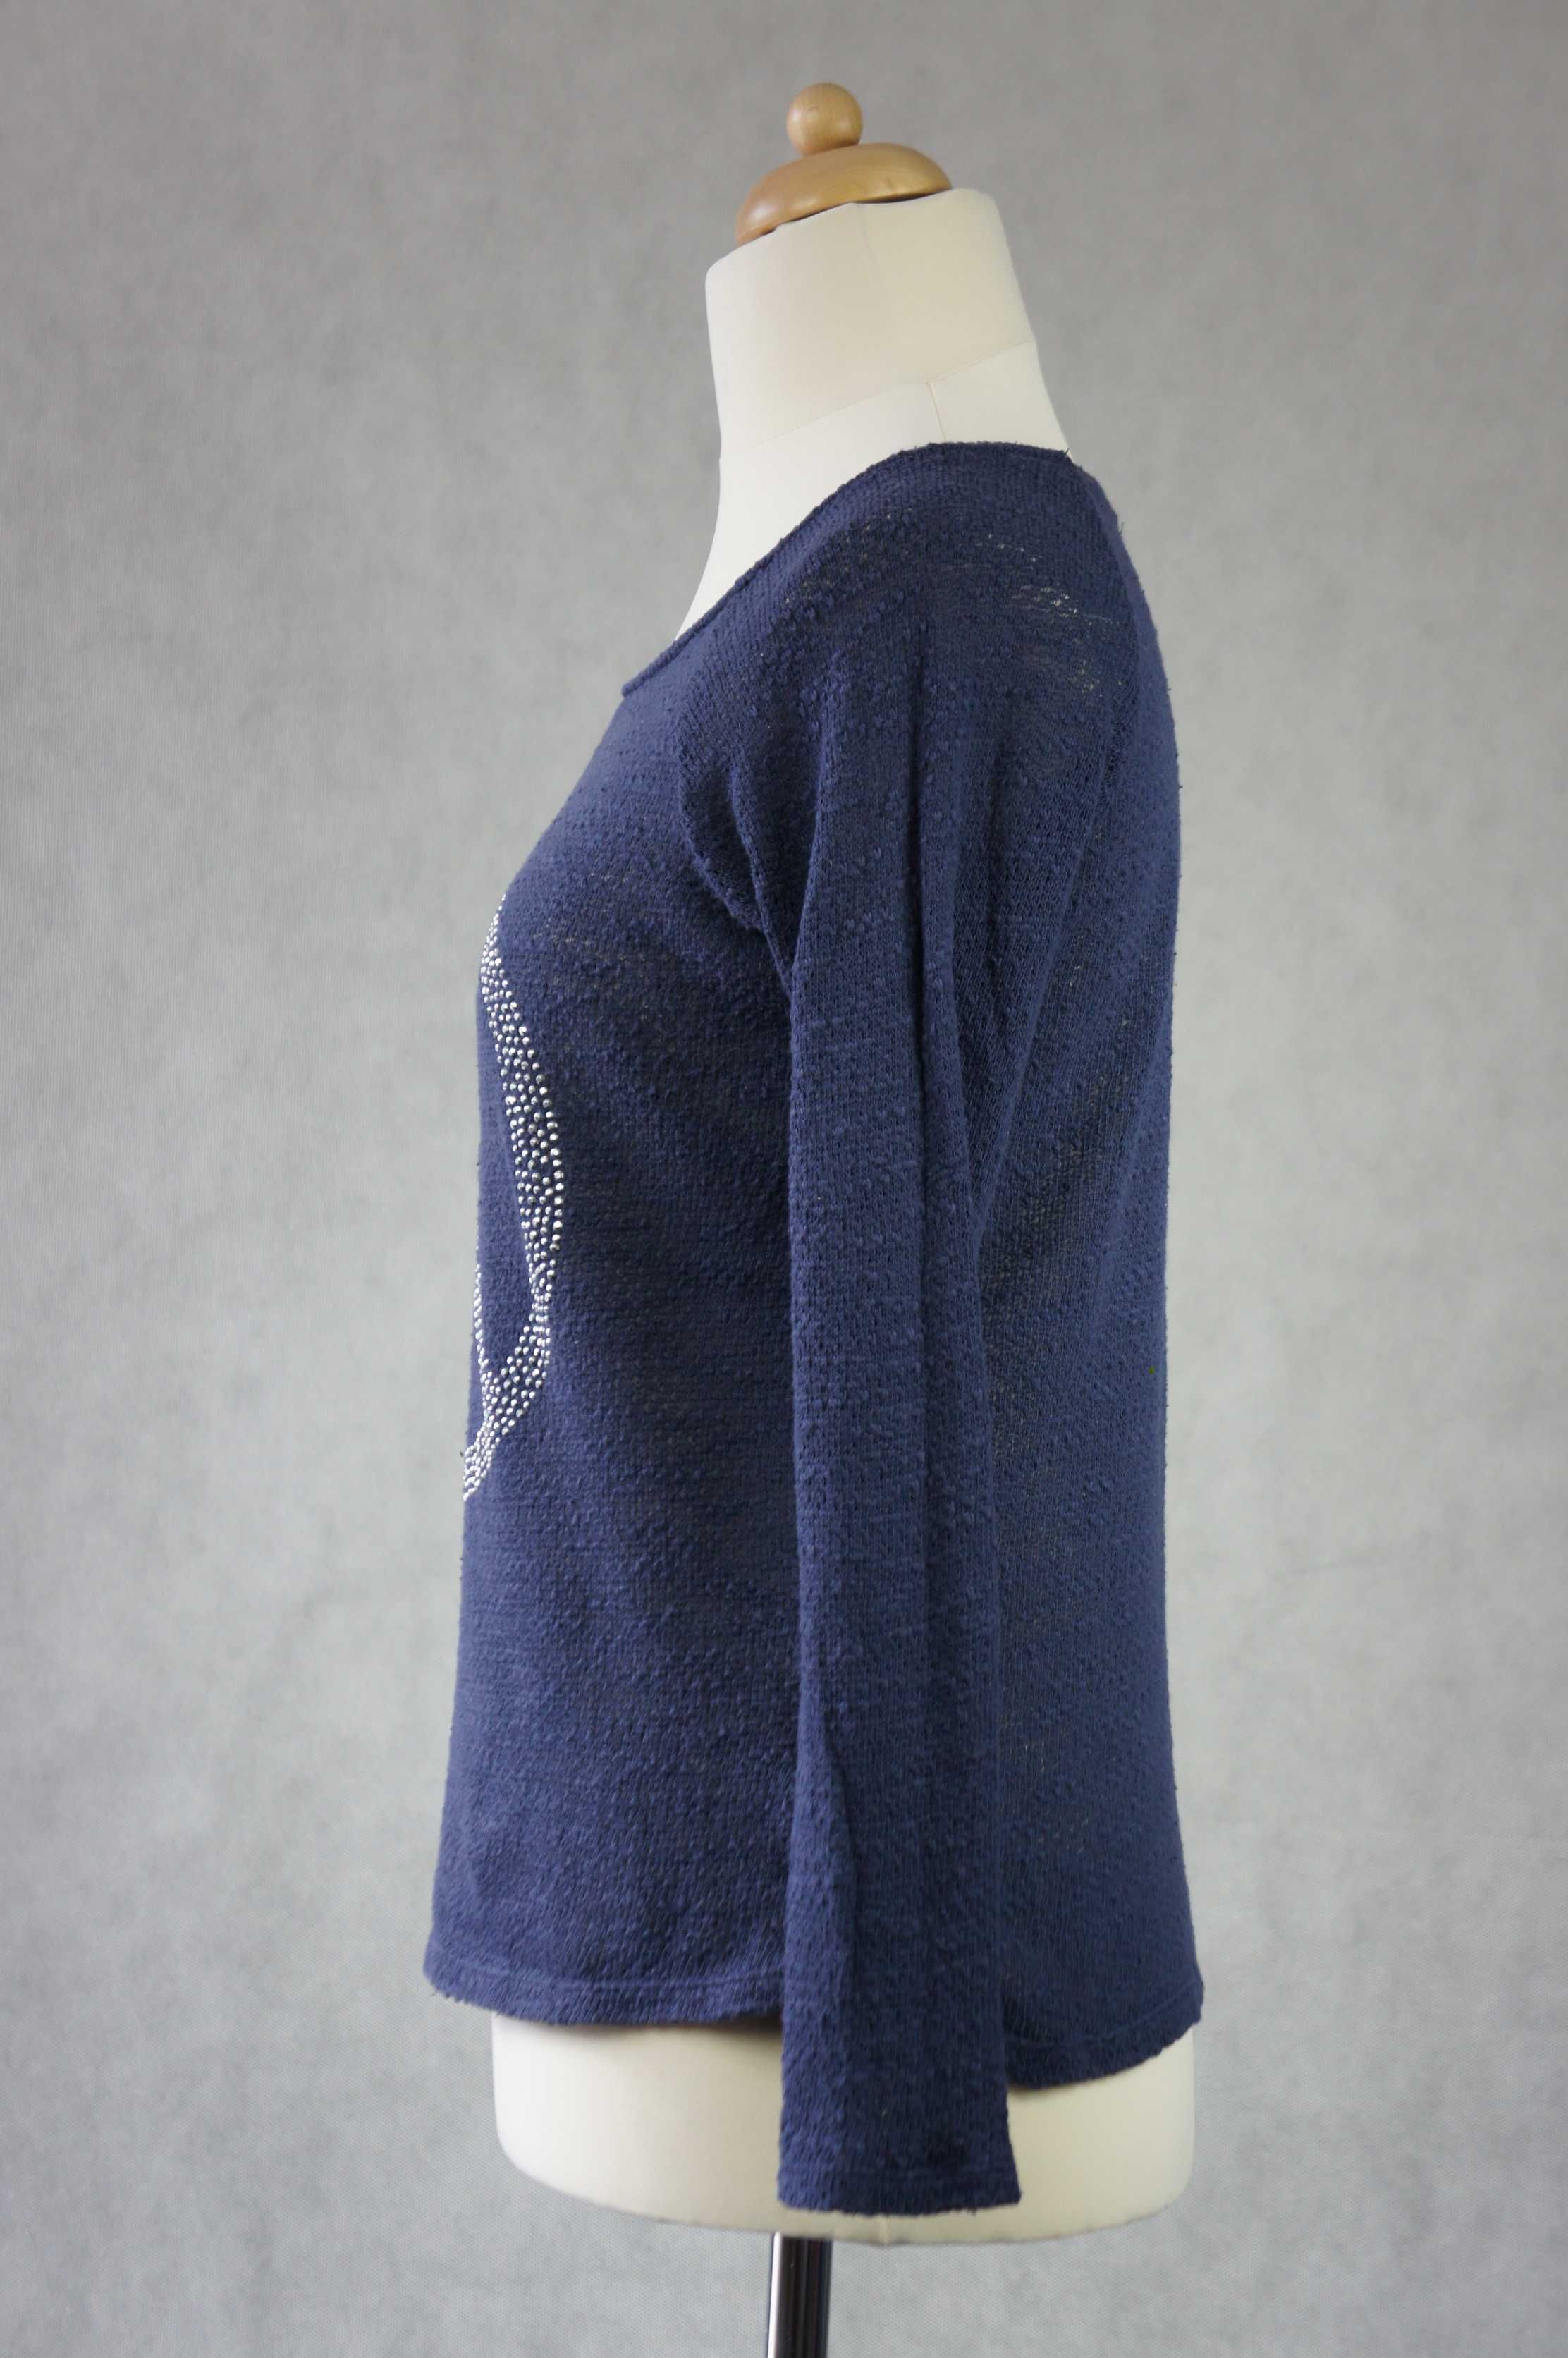 Cubus damska bluzka ażurowy sweterek bawełna granatowa pacyfa dżety M